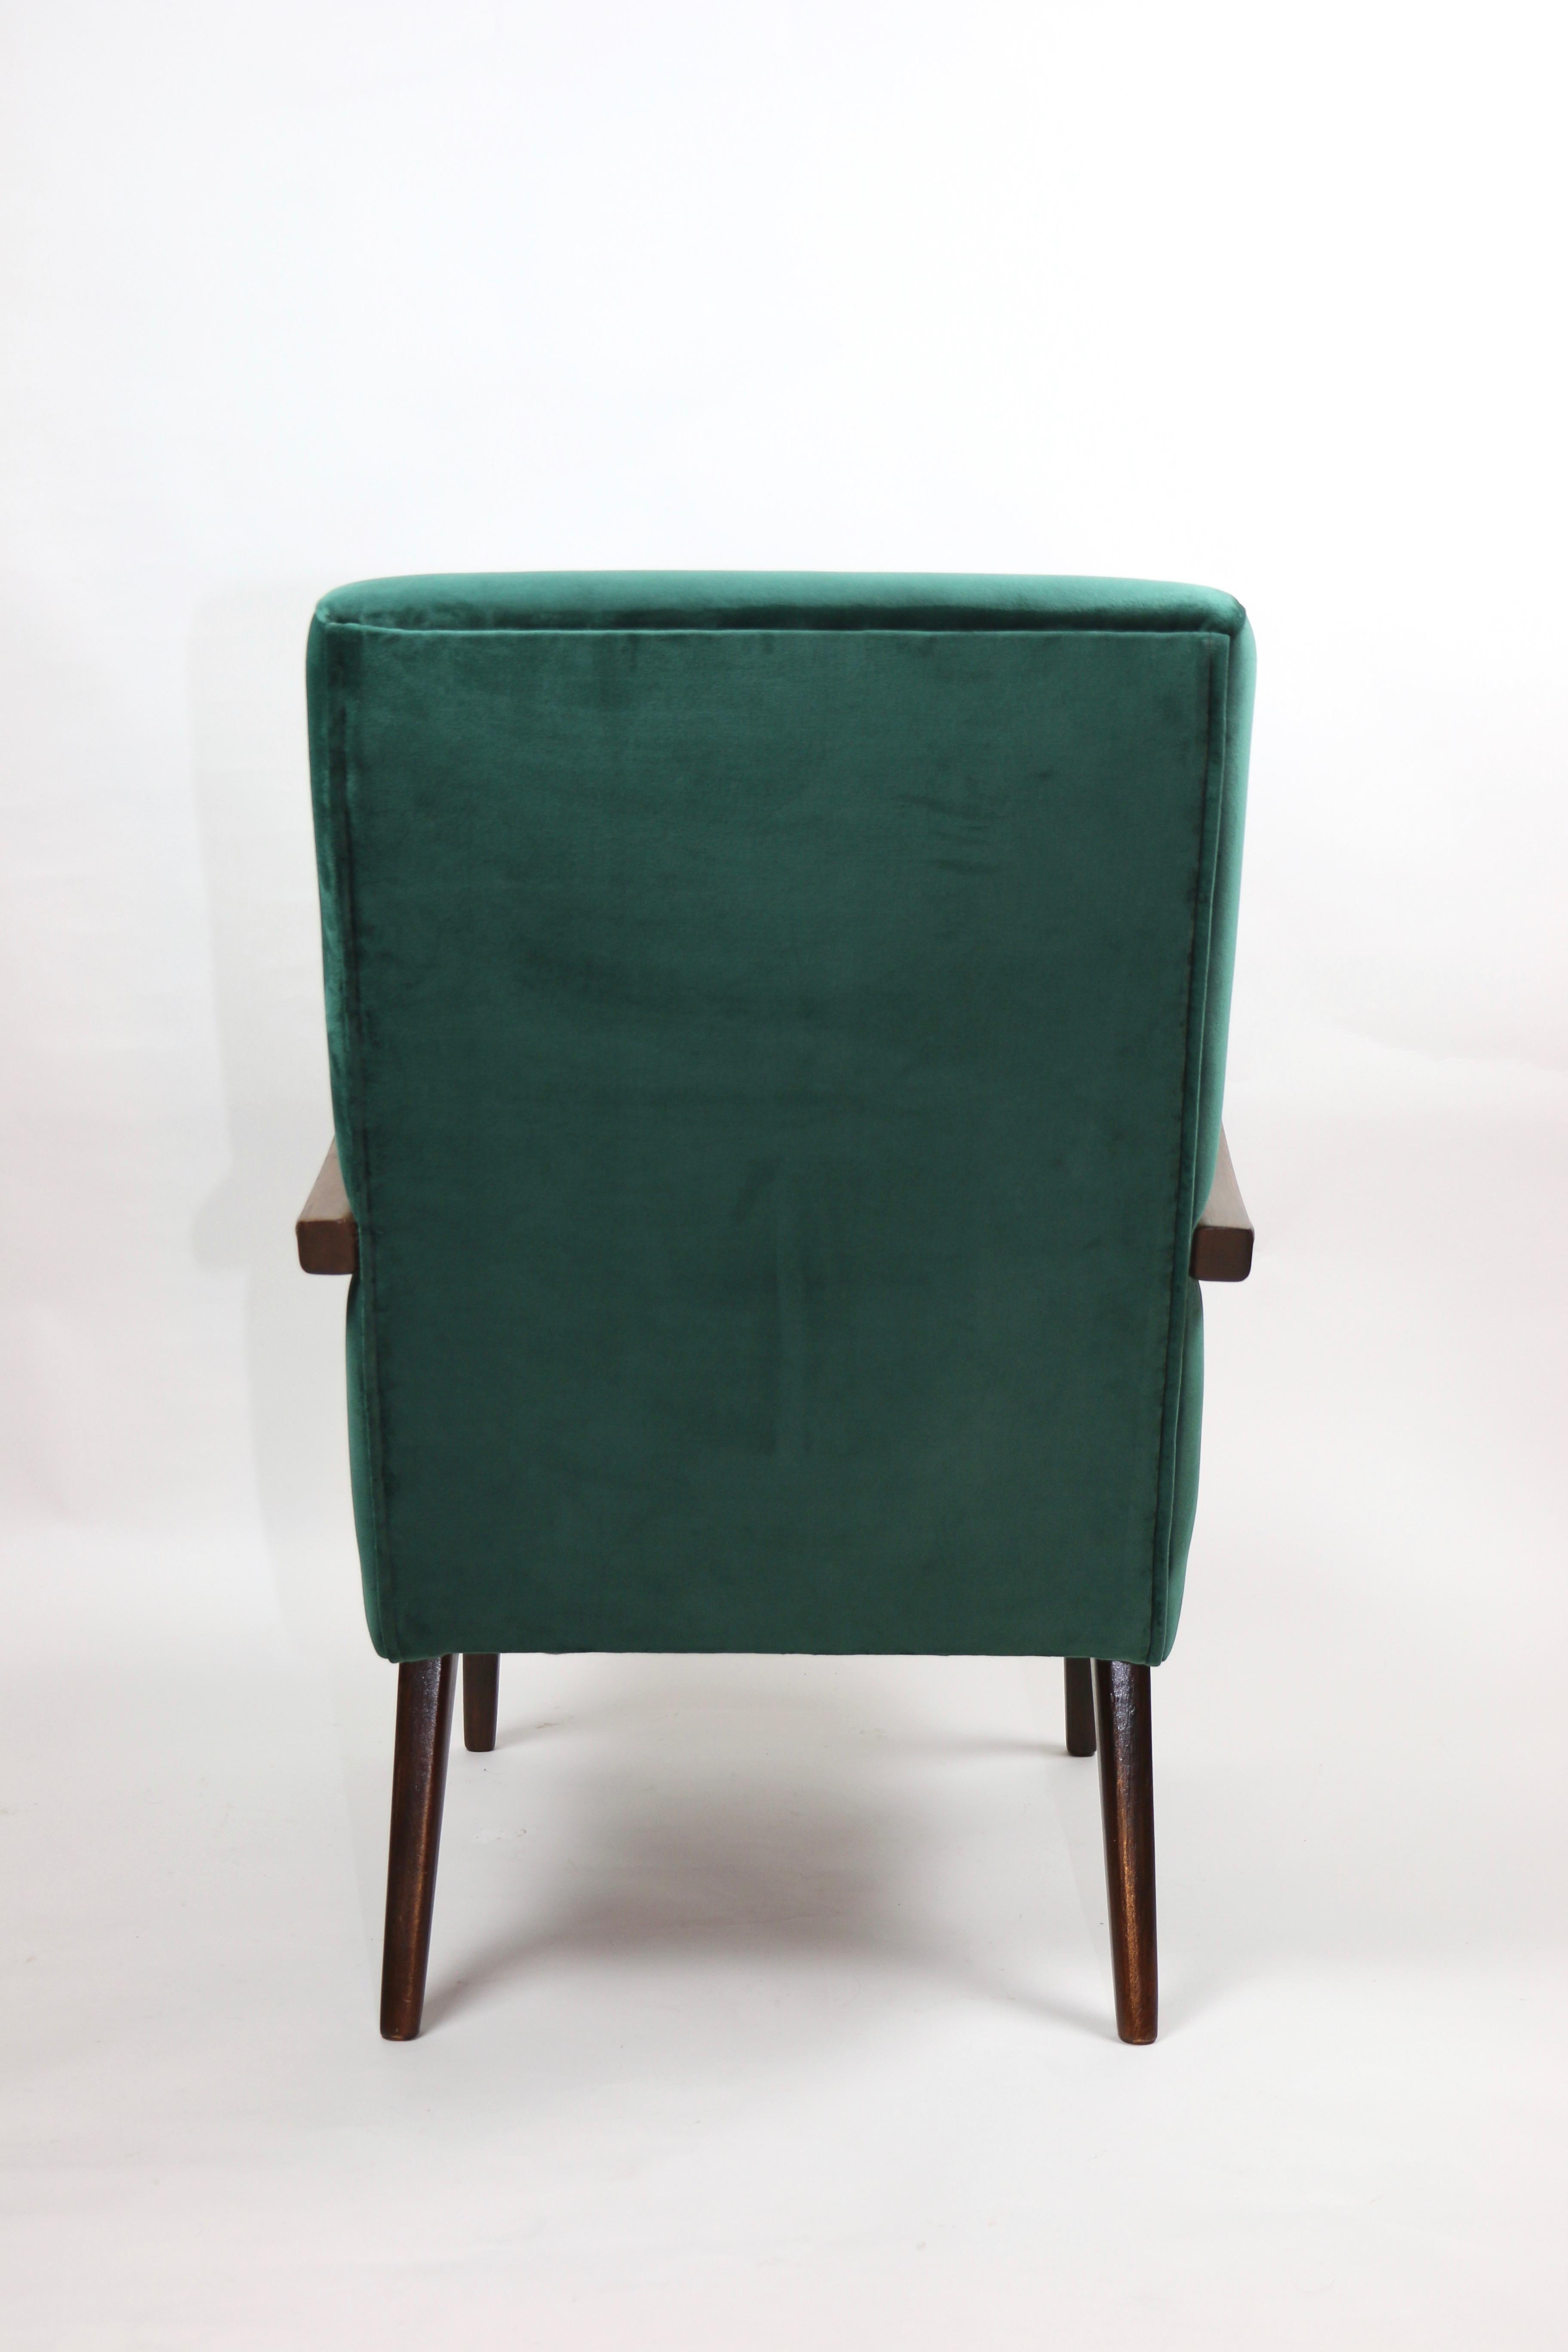 Vintage Armchair in Green Velvet from 1970s For Sale 2